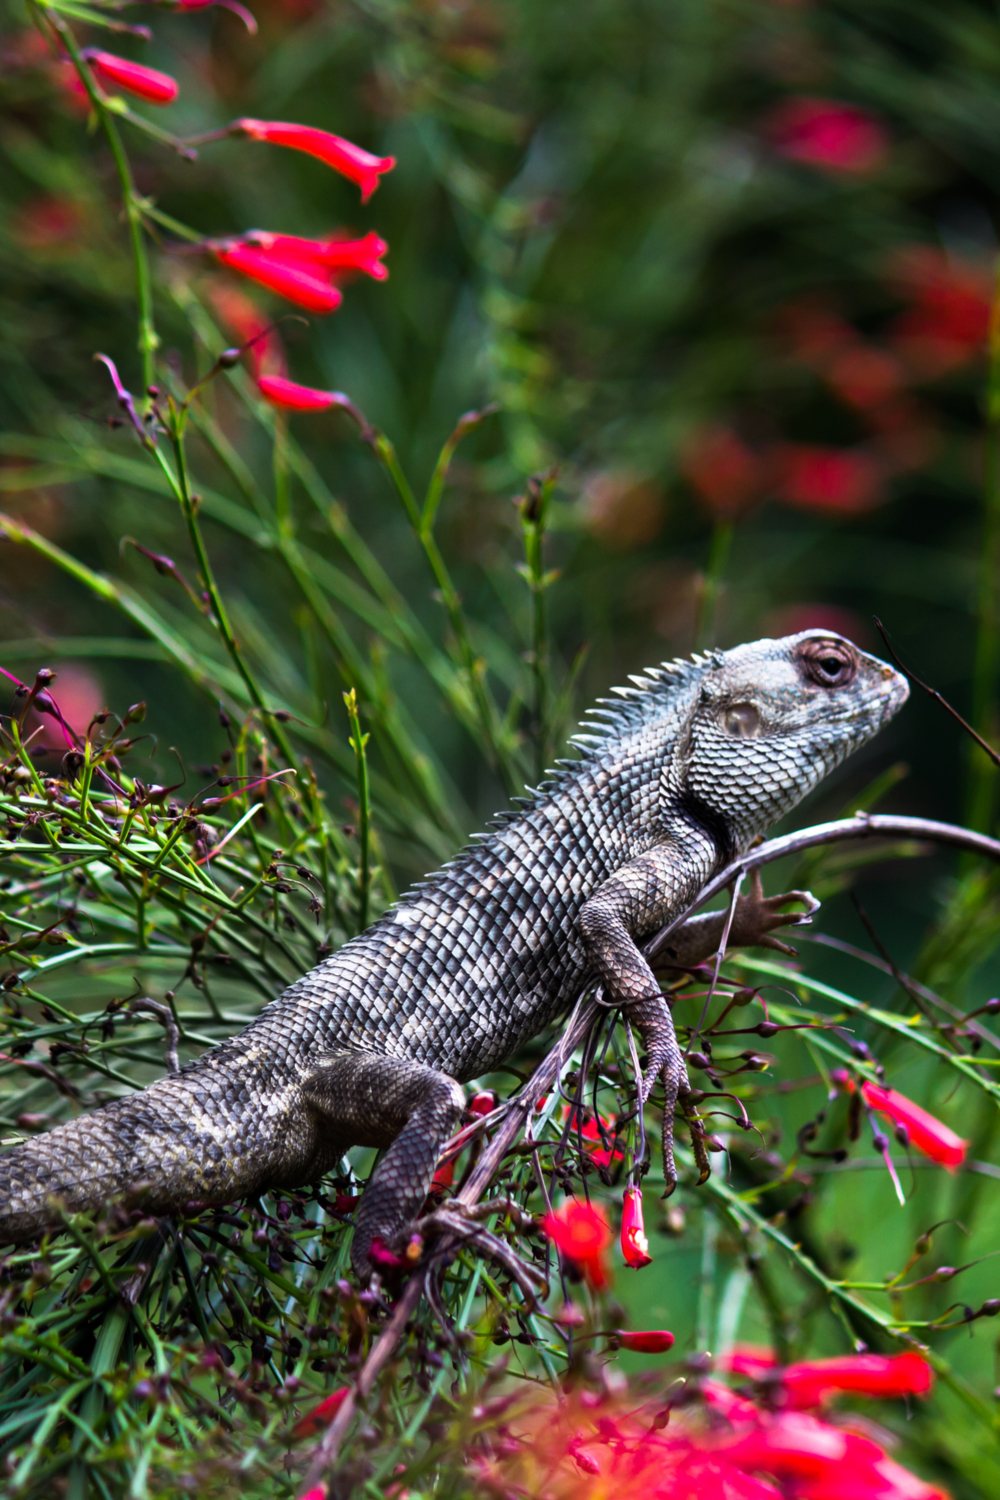 Garden Lizards Habits and biology